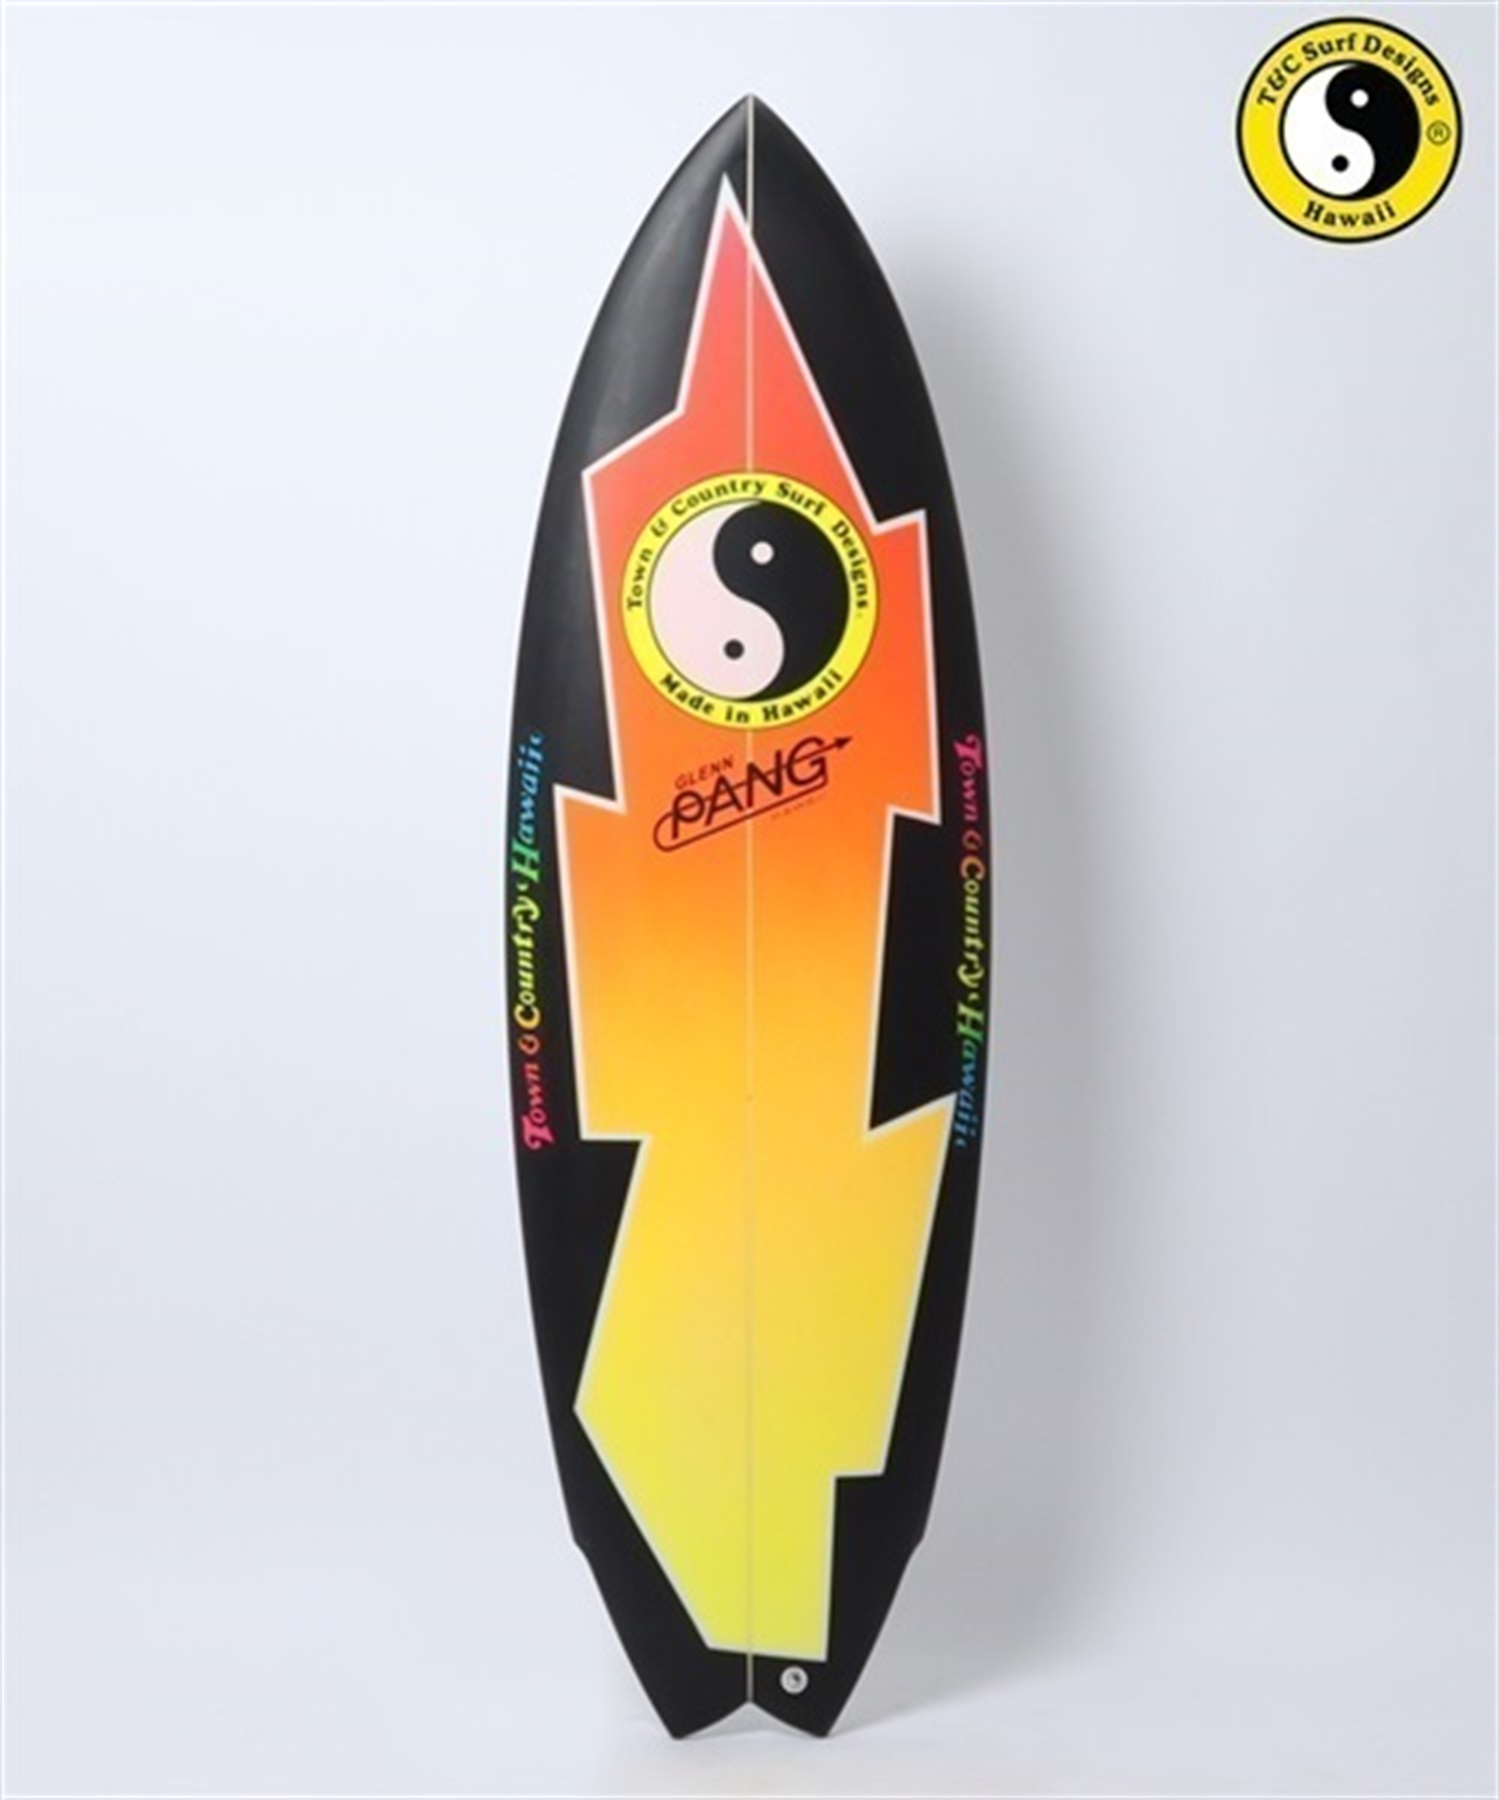 T\u0026C SURF SINR GLENN PANG サーフボード - サーフィン・ボディボード